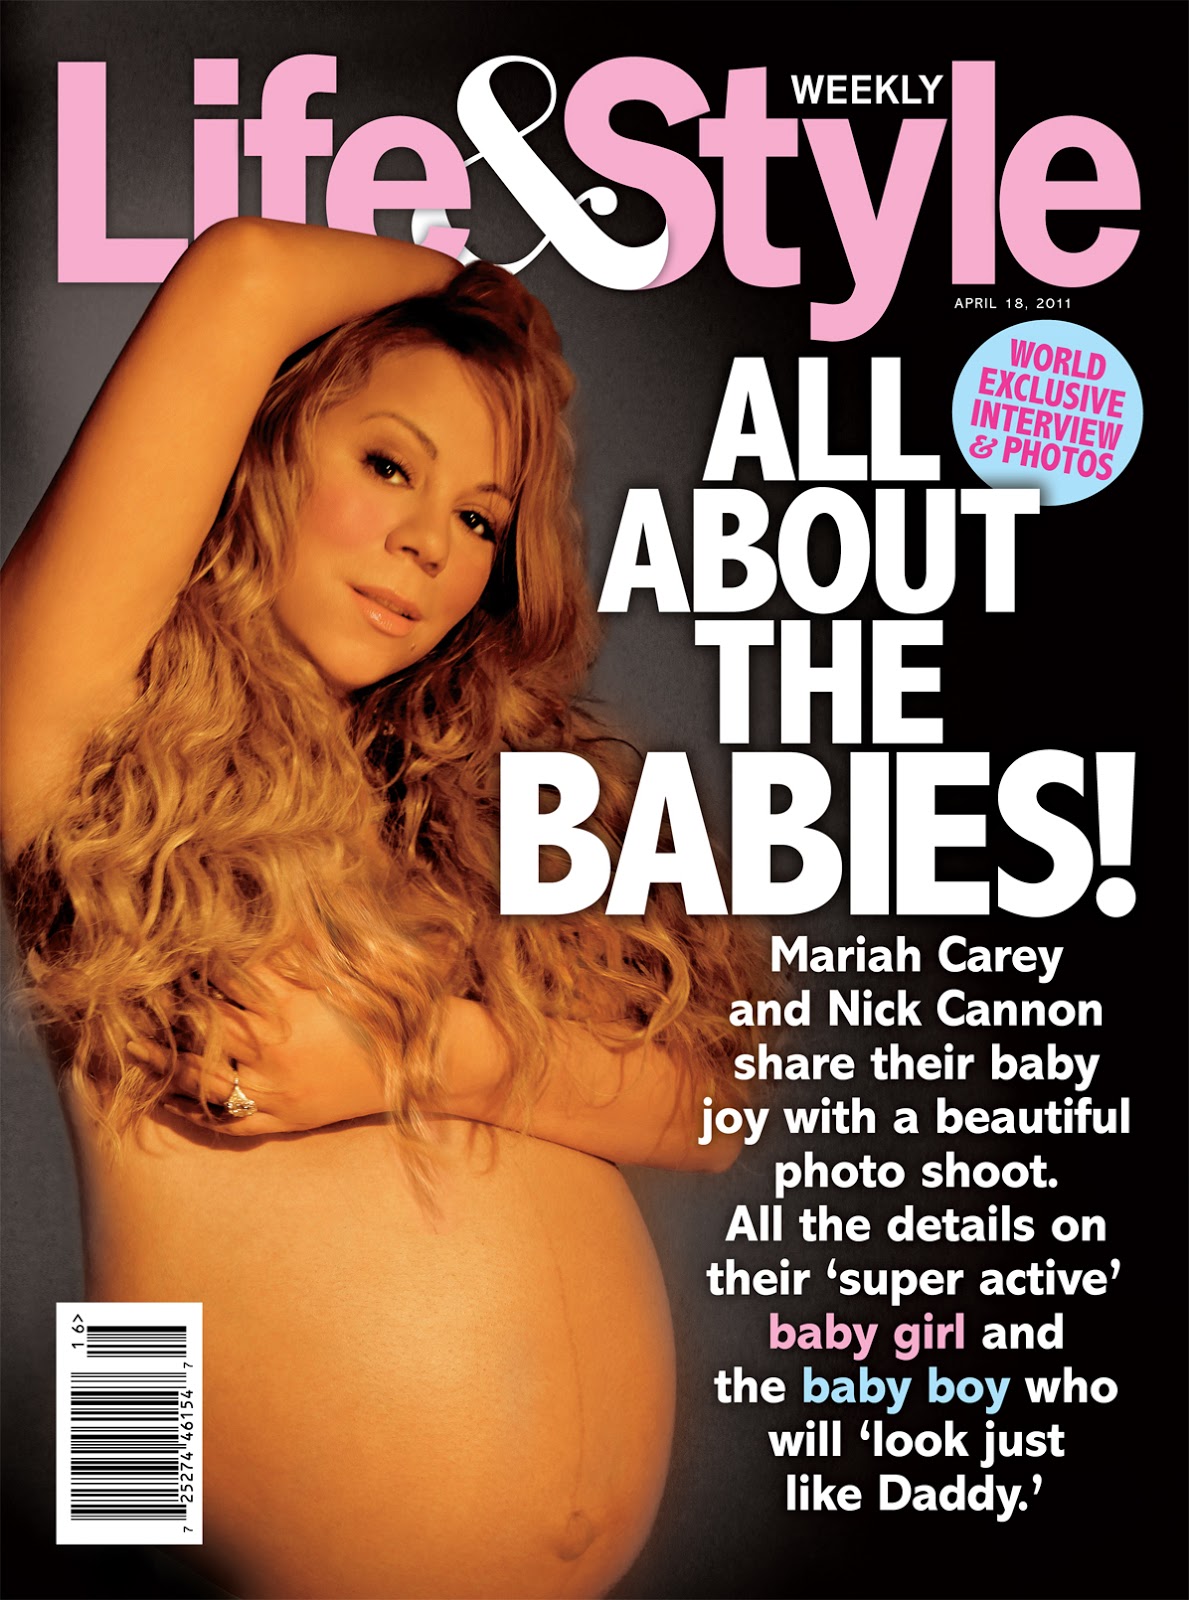 http://4.bp.blogspot.com/-qeI0havW50I/TZ0tlUFdJuI/AAAAAAAABxA/3sMYIvMErkU/s1600/Mariah+Carey+Nude+Pregnant+Pic+Life+%2526+Style+Magazine.jpg